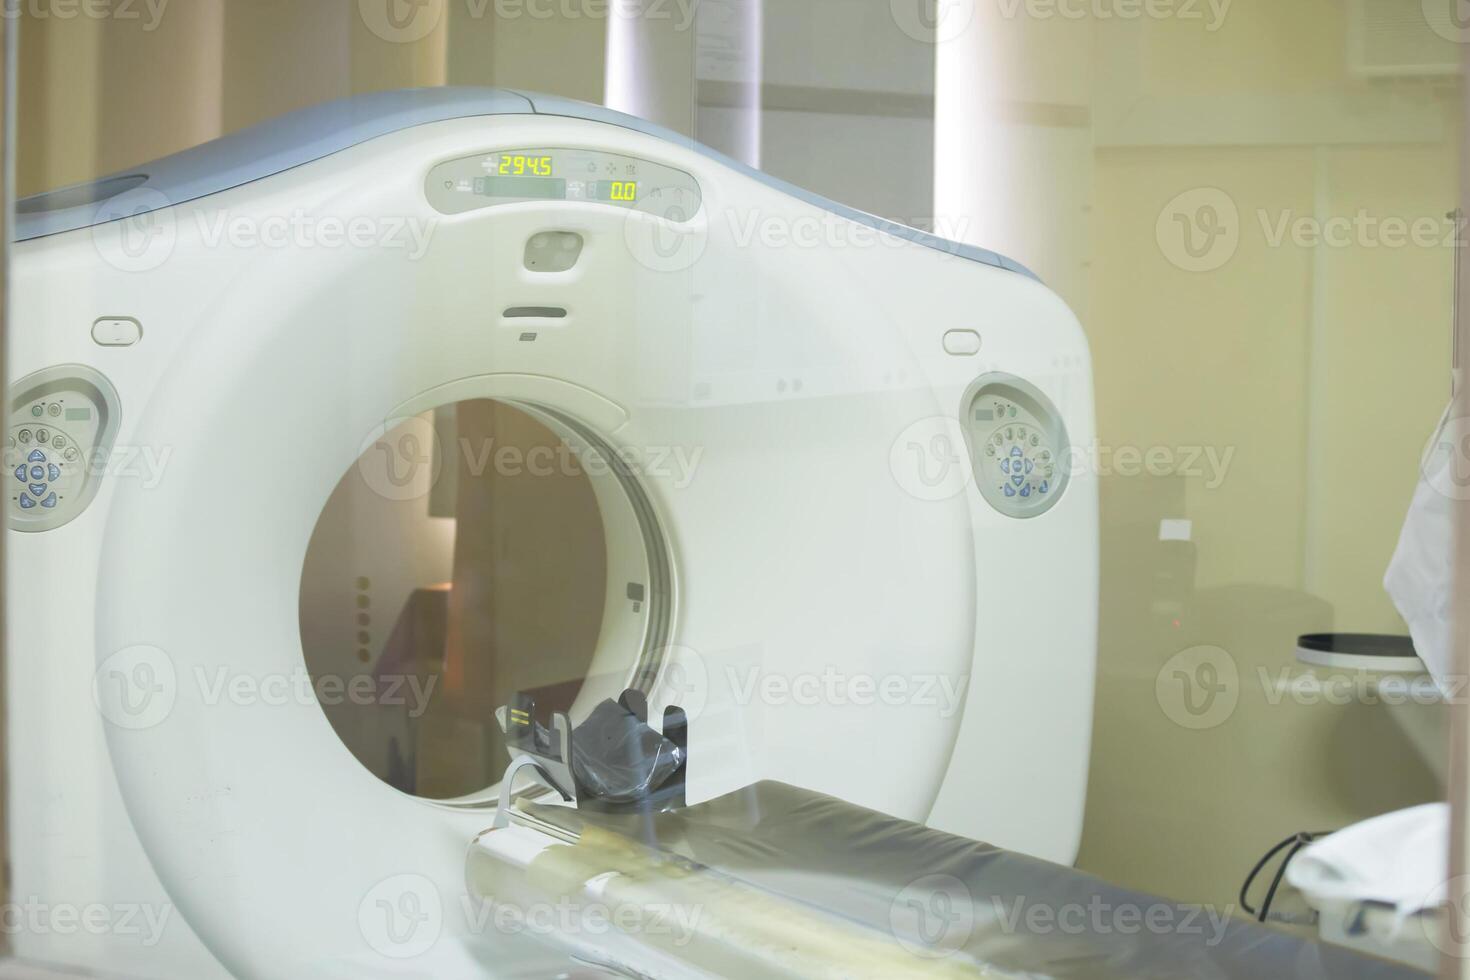 mri machine voor magnetisch resonantie in beeld brengen in ziekenhuis radiologie foto